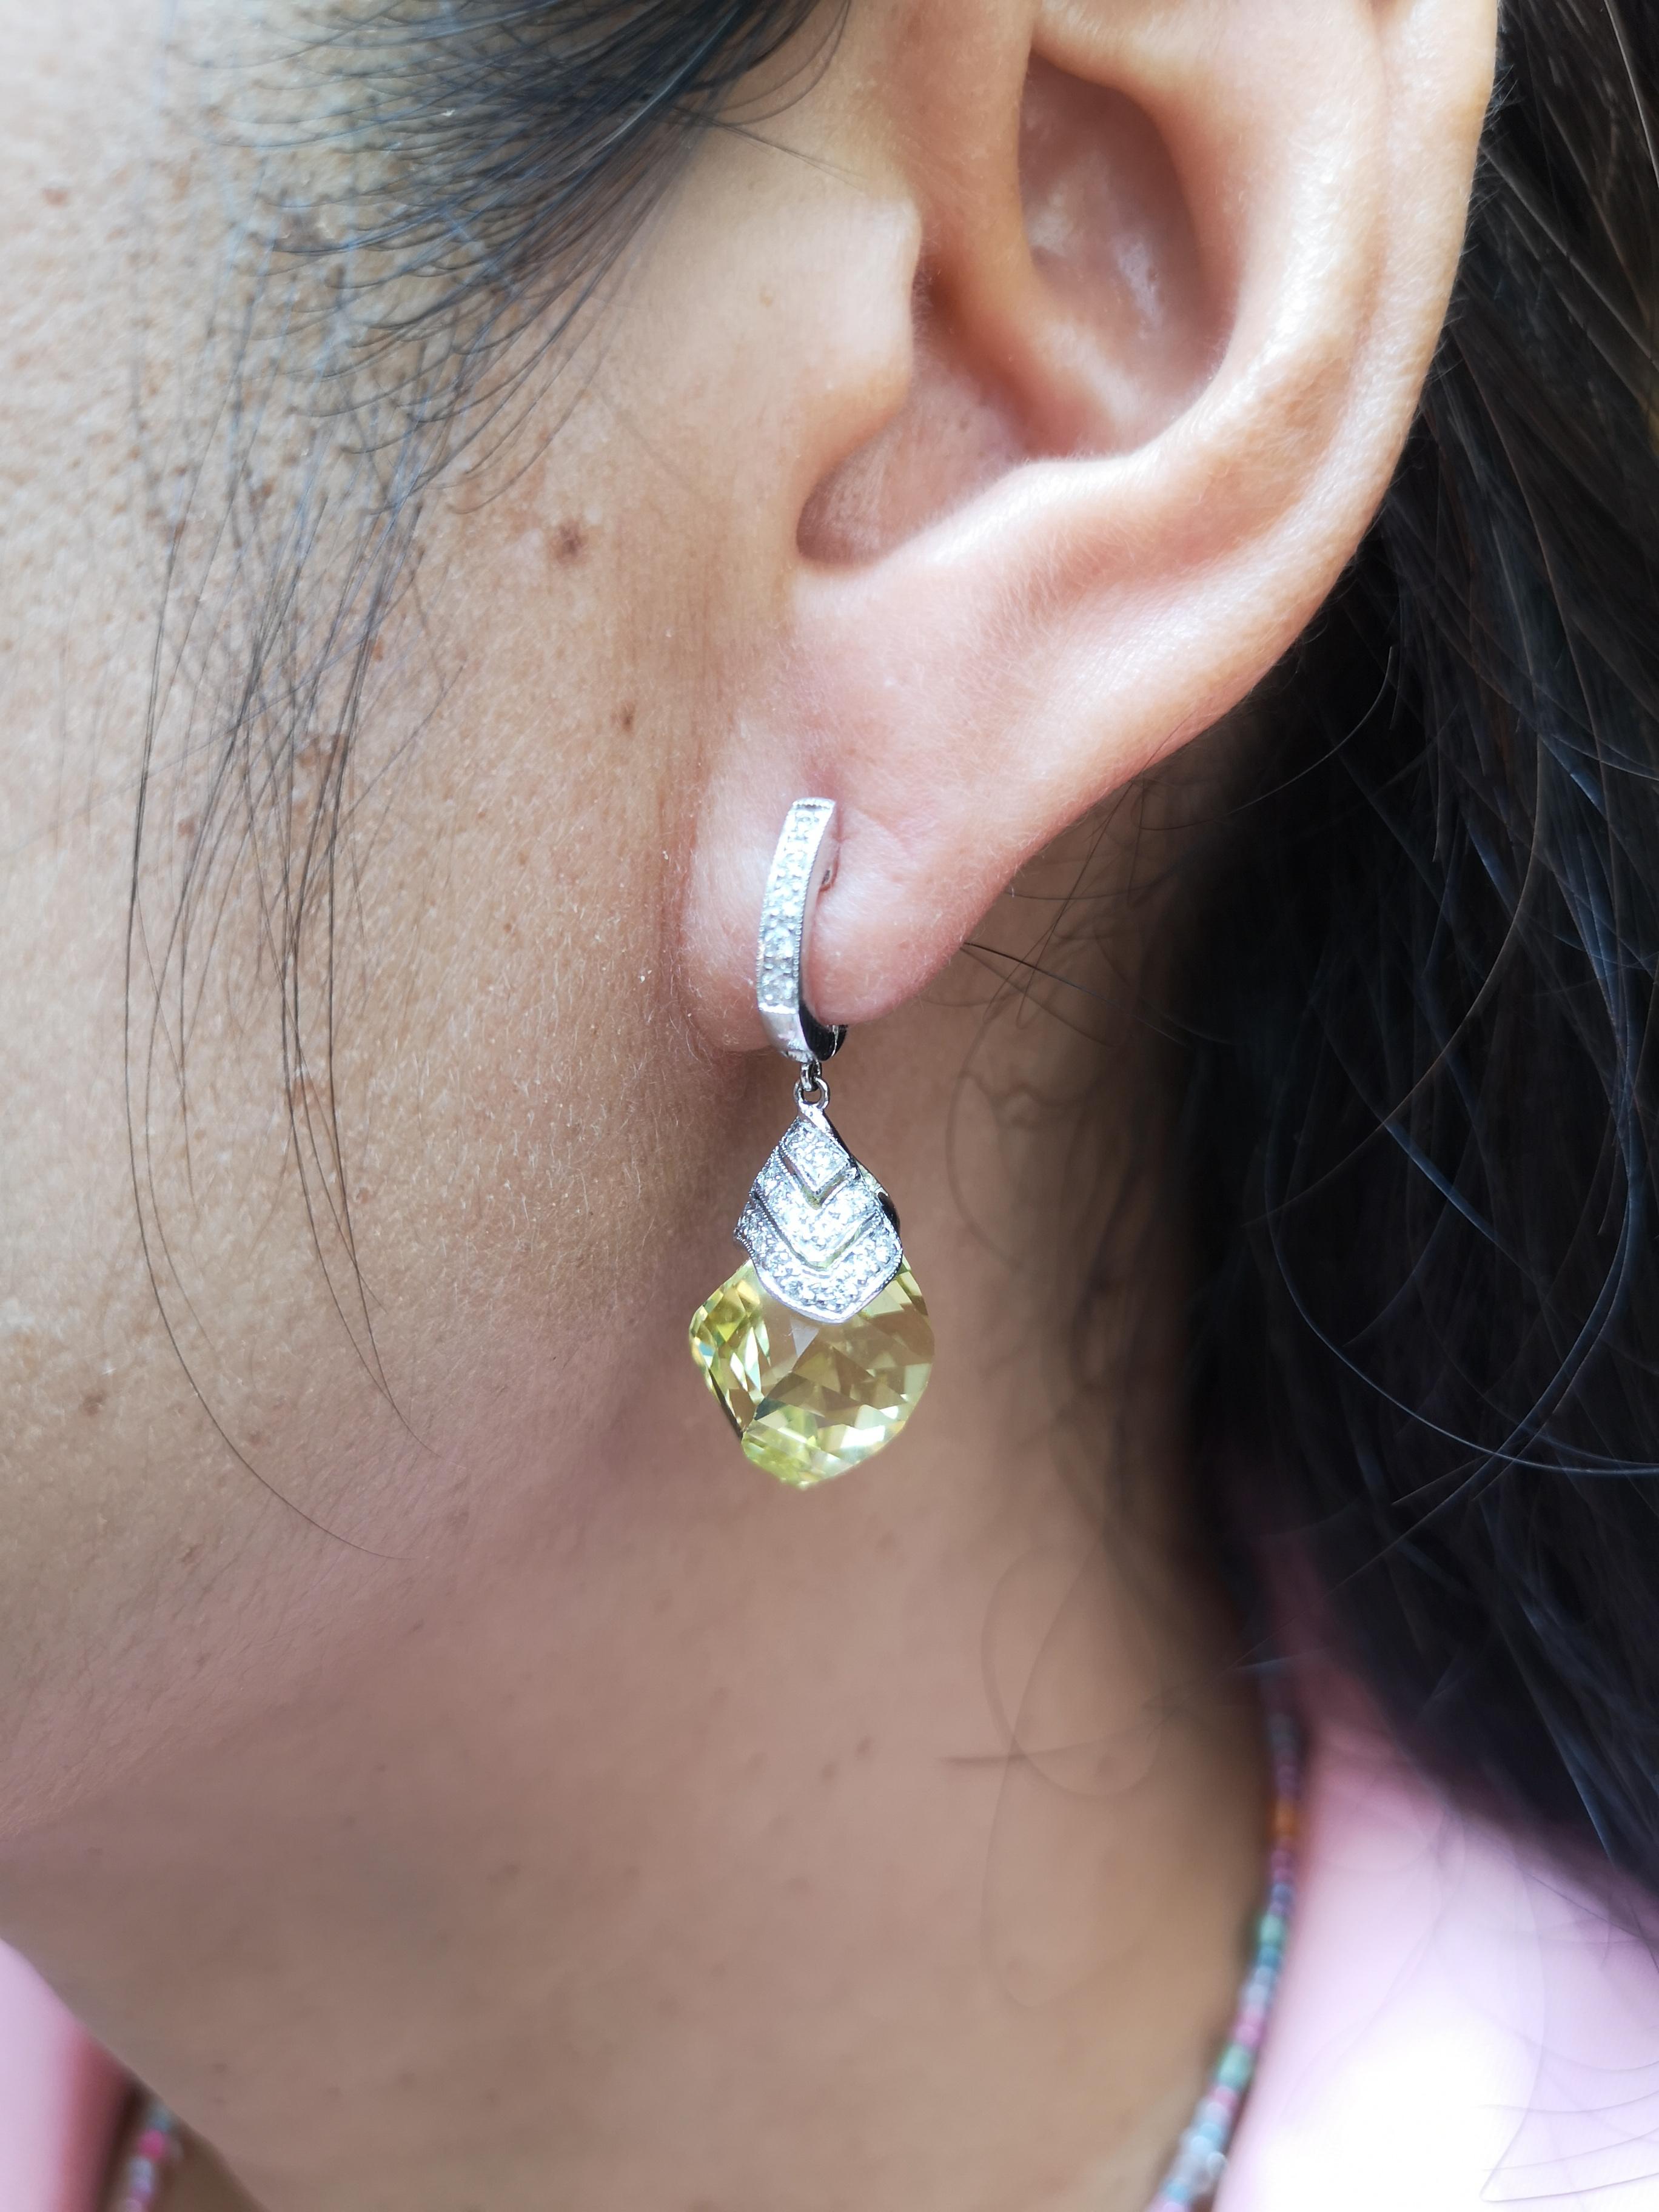 Boucles d'oreilles en quartz citron 22,17 carats et diamant 0,35 carat serties dans une monture en or blanc 18 carats

Largeur : 1,3 cm
Longueur : 3,2 cm 

